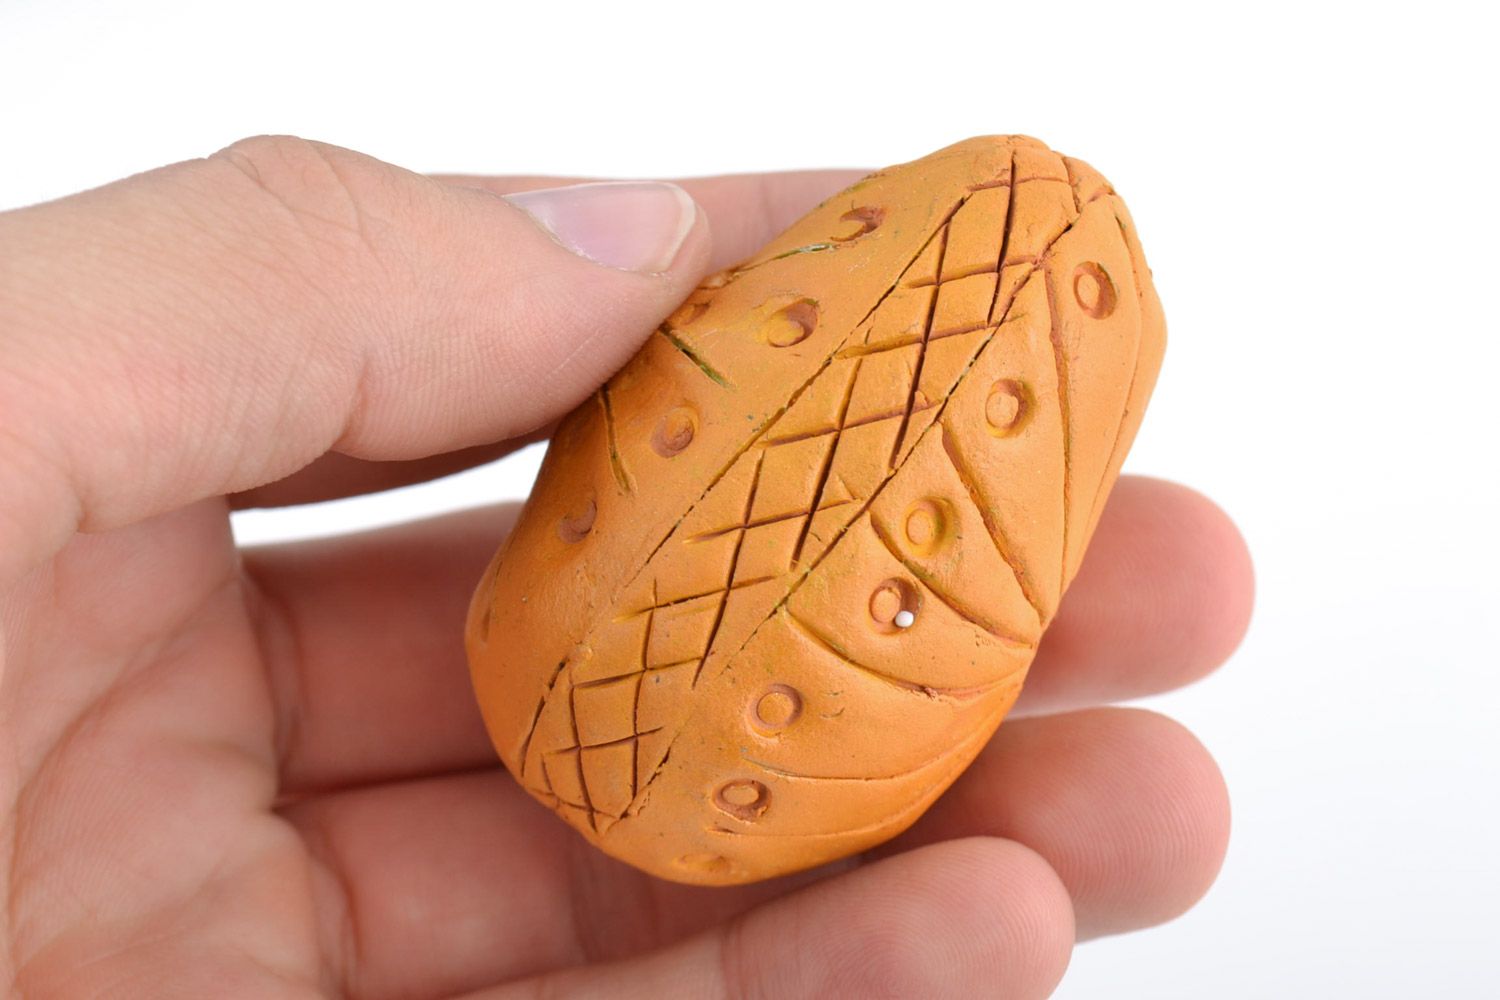 Декоративное пасхальное яйцо глиняное расписанное акриловыми красками хэнд мэйд фото 2